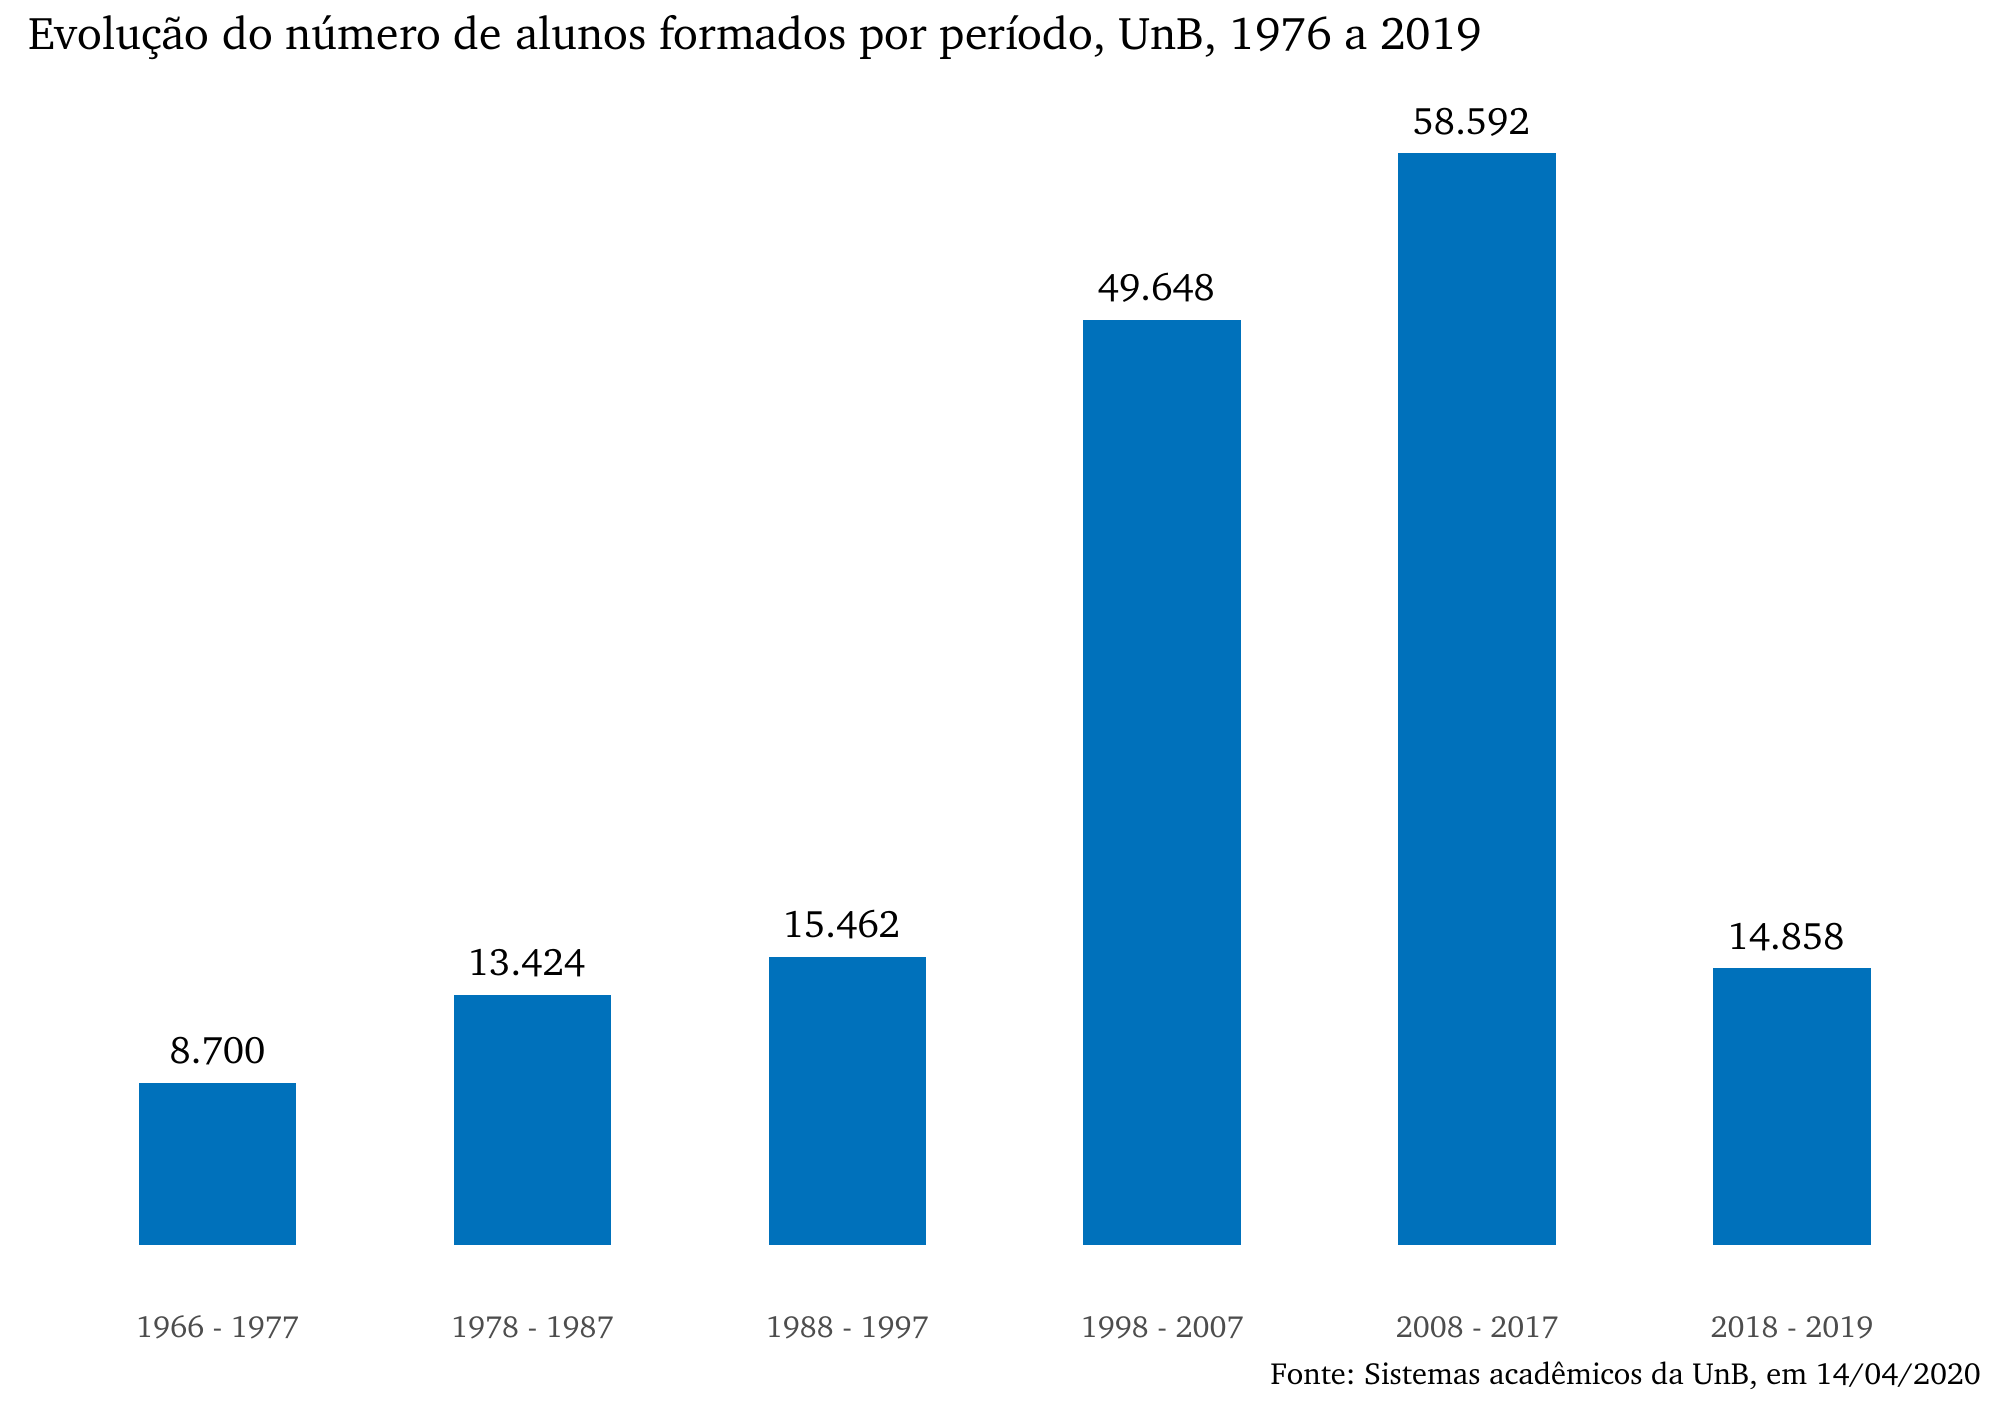 Total de alunos formados por período, UnB, 1966 a 2019